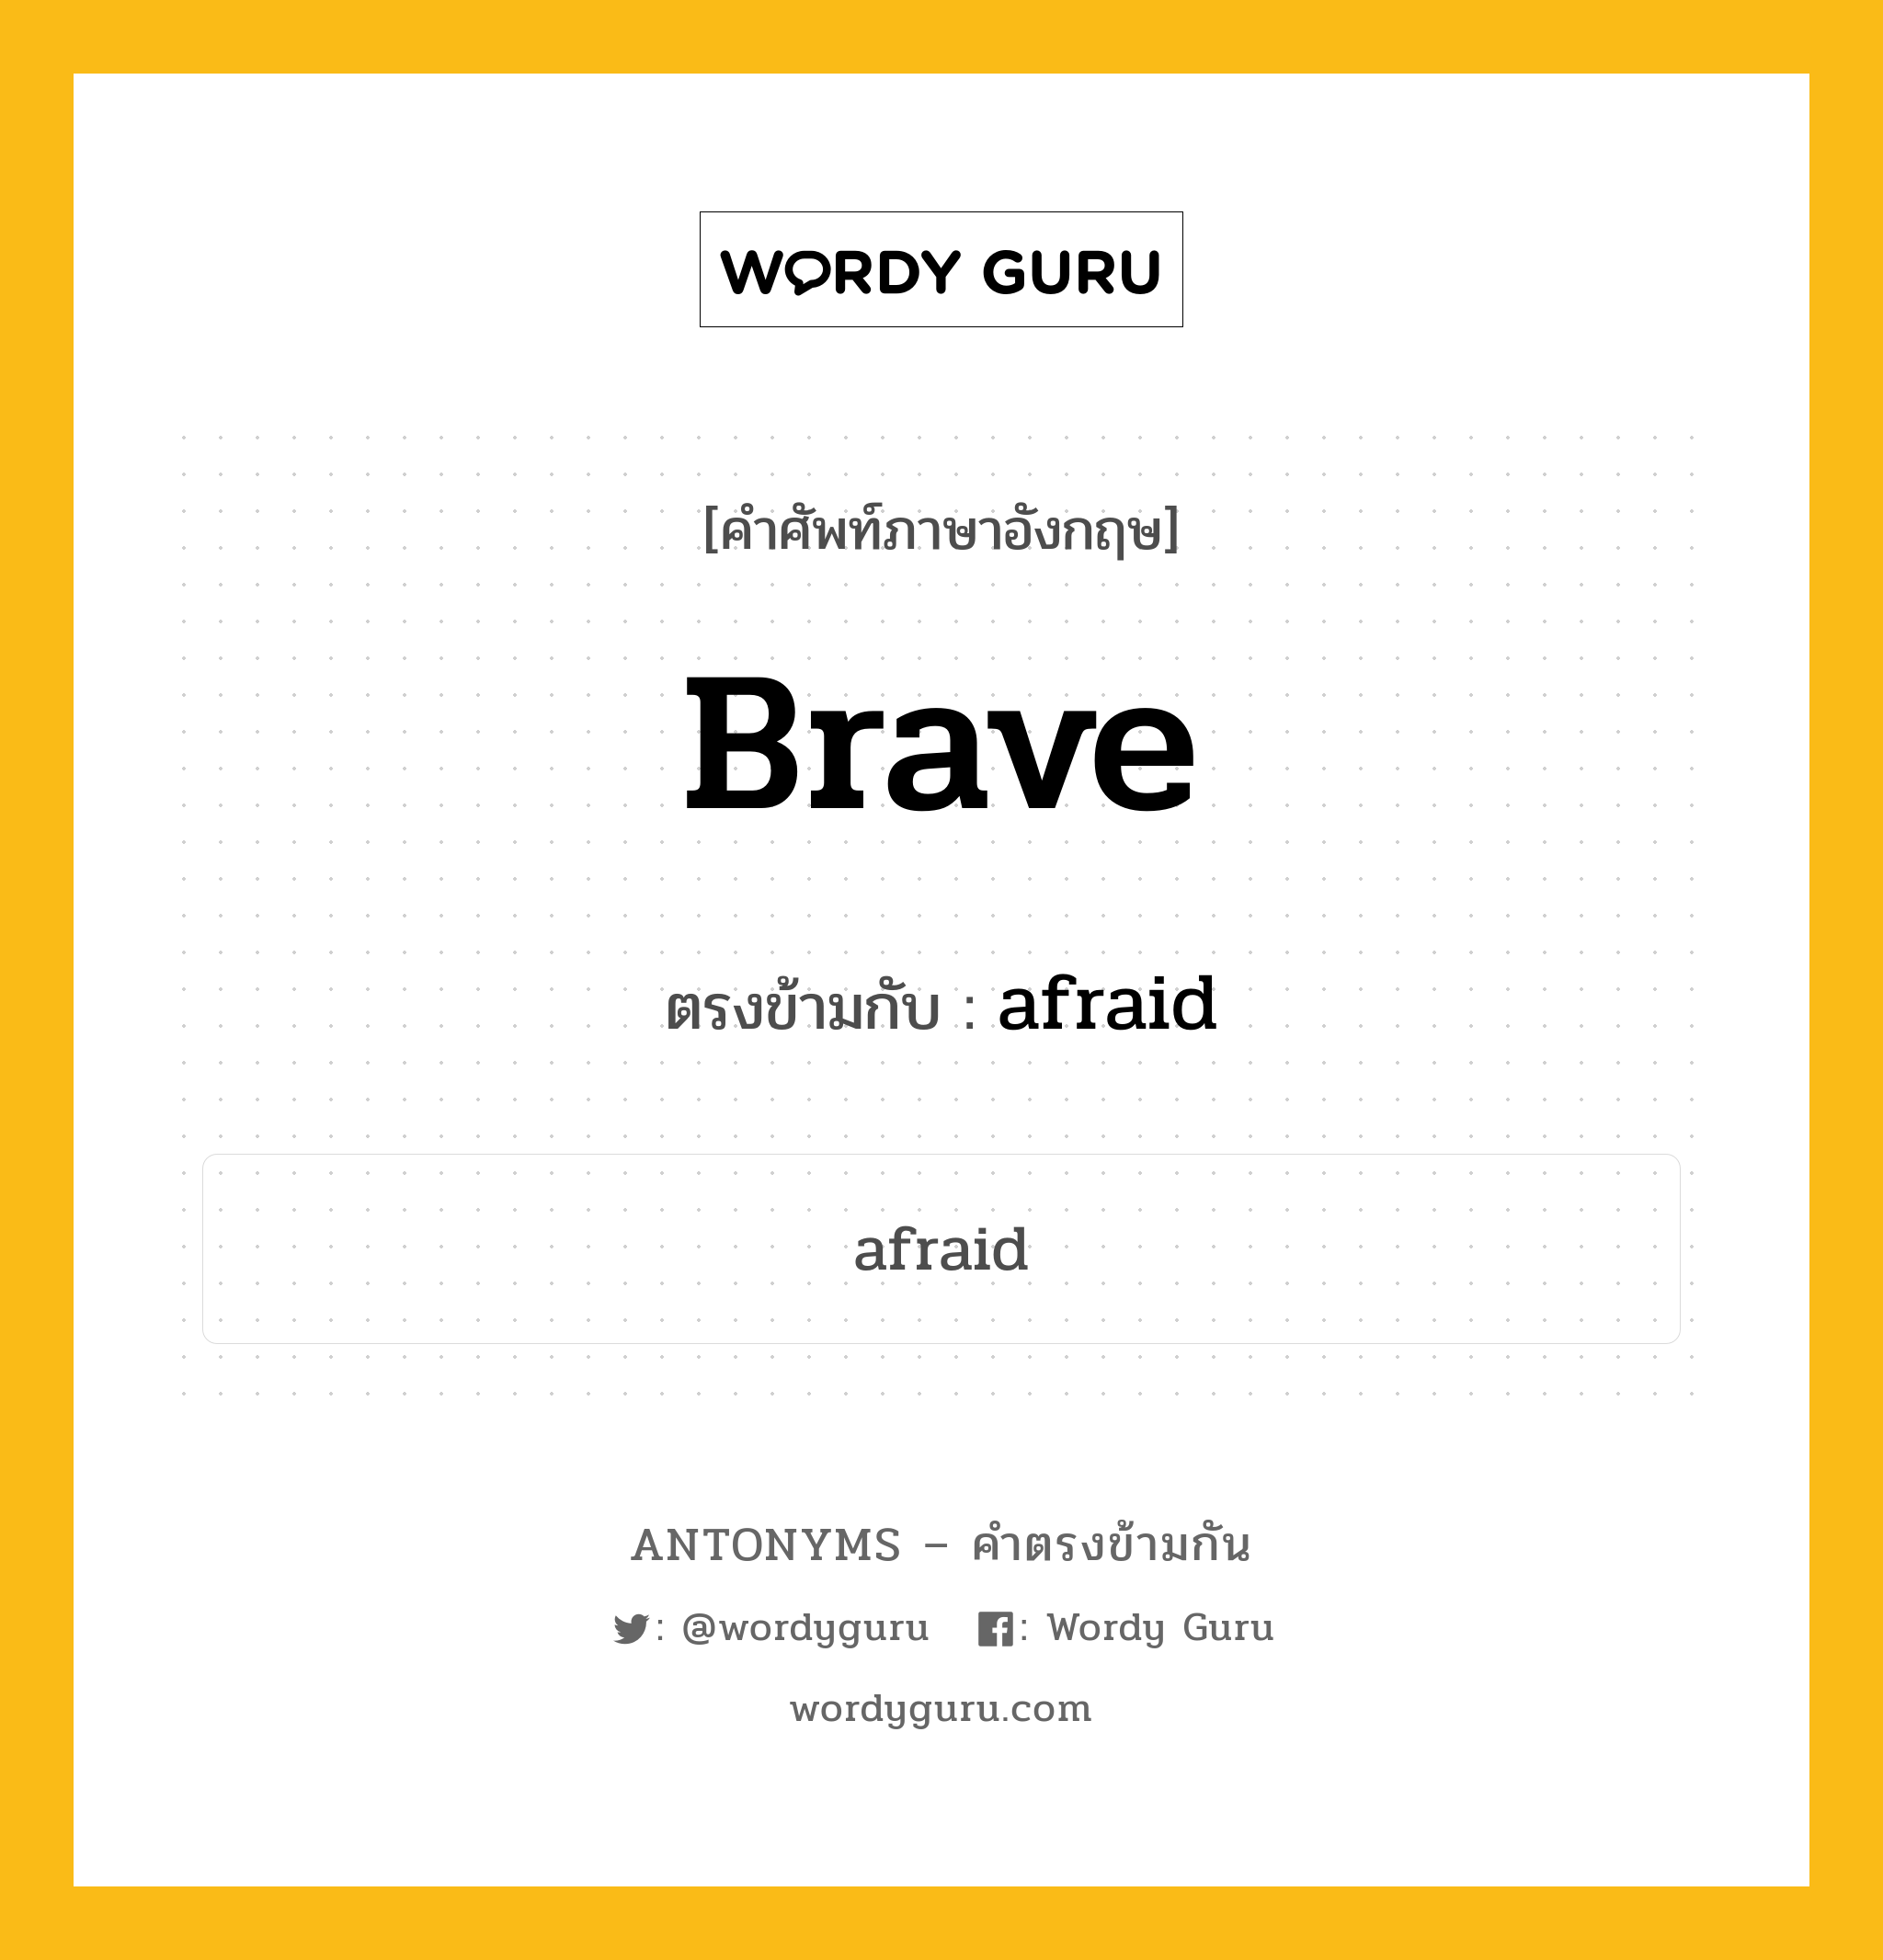 brave เป็นคำตรงข้ามกับคำไหนบ้าง?, คำศัพท์ภาษาอังกฤษ brave ตรงข้ามกับ afraid หมวด afraid